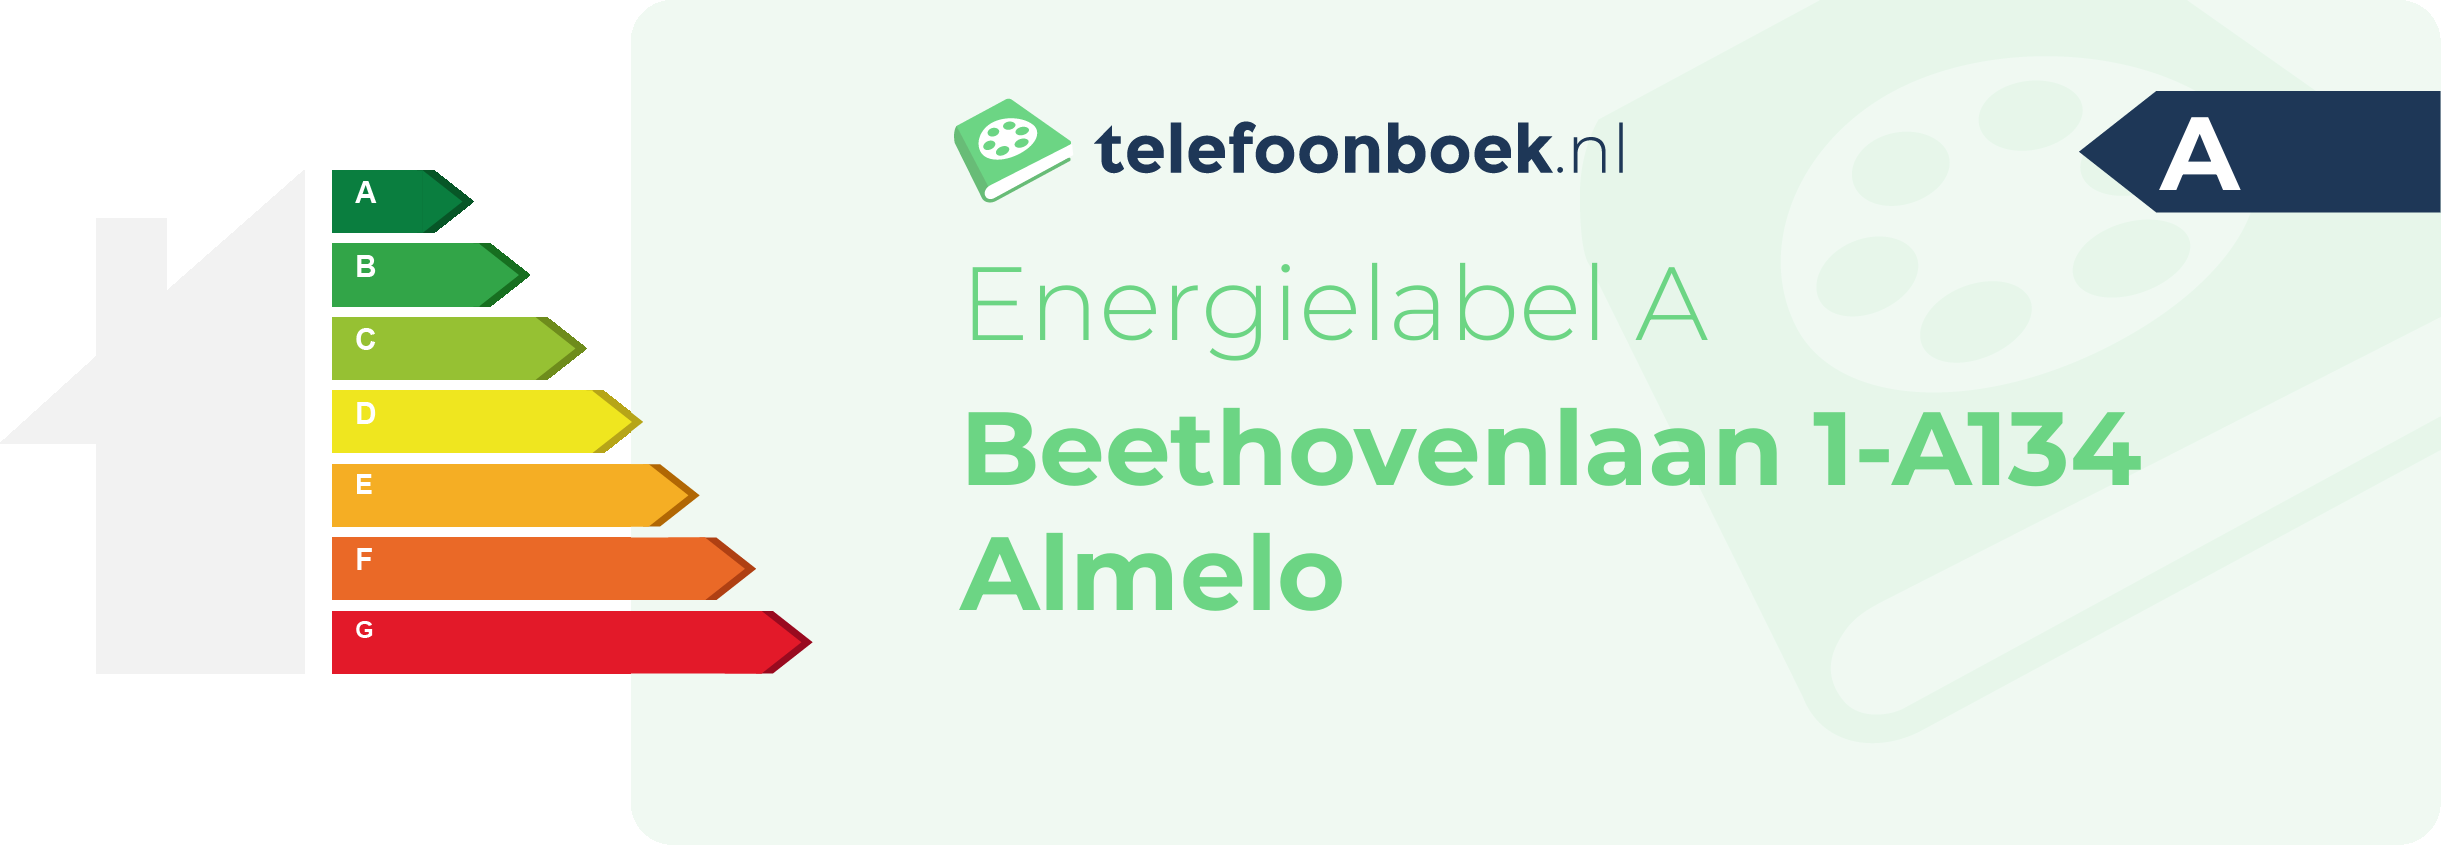 Energielabel Beethovenlaan 1-A134 Almelo